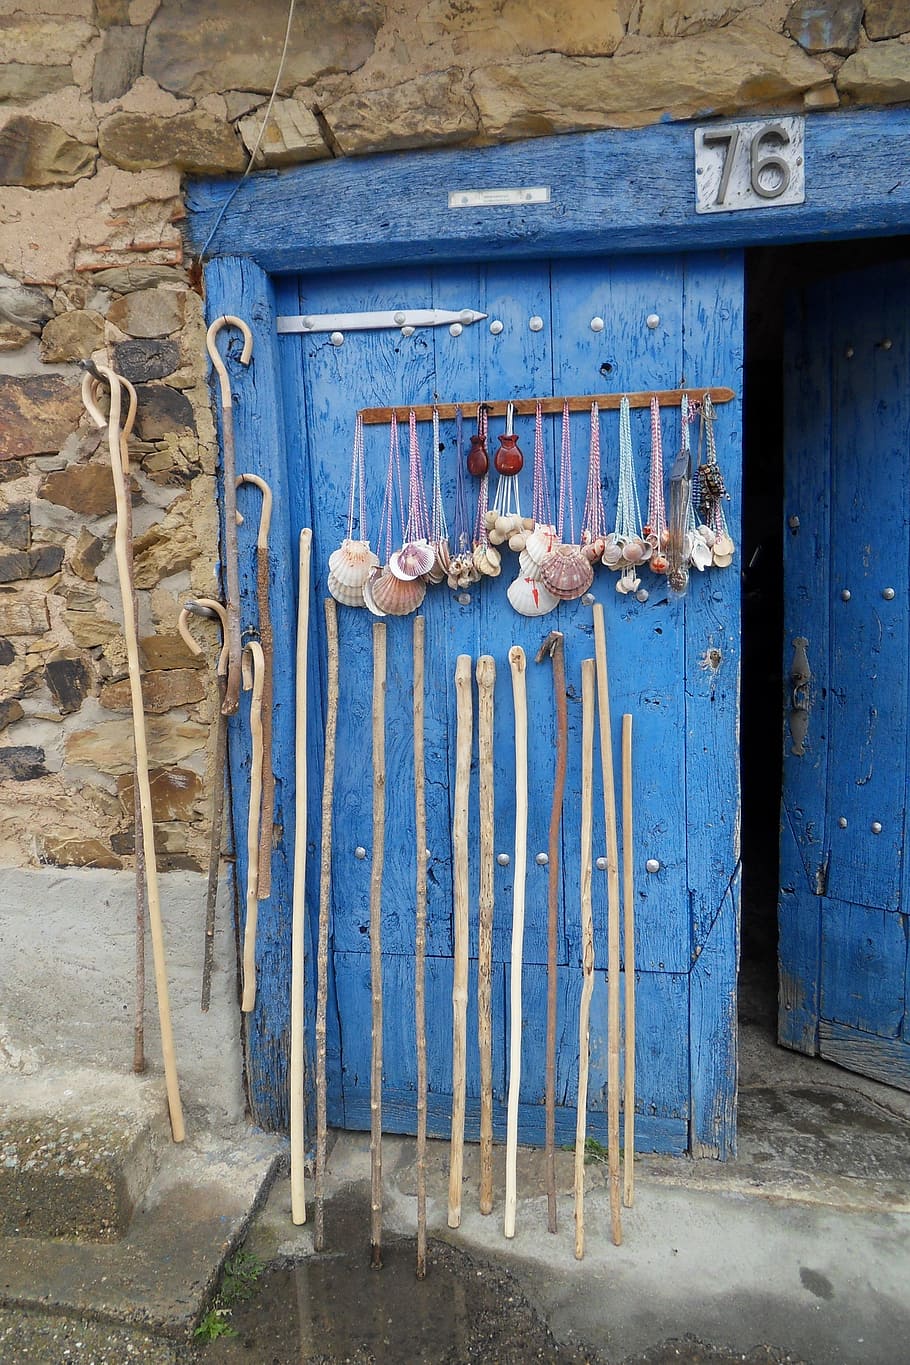 hand canes leaned on blue door, pilgrim, pilgrim rods, jakobsweg, HD wallpaper